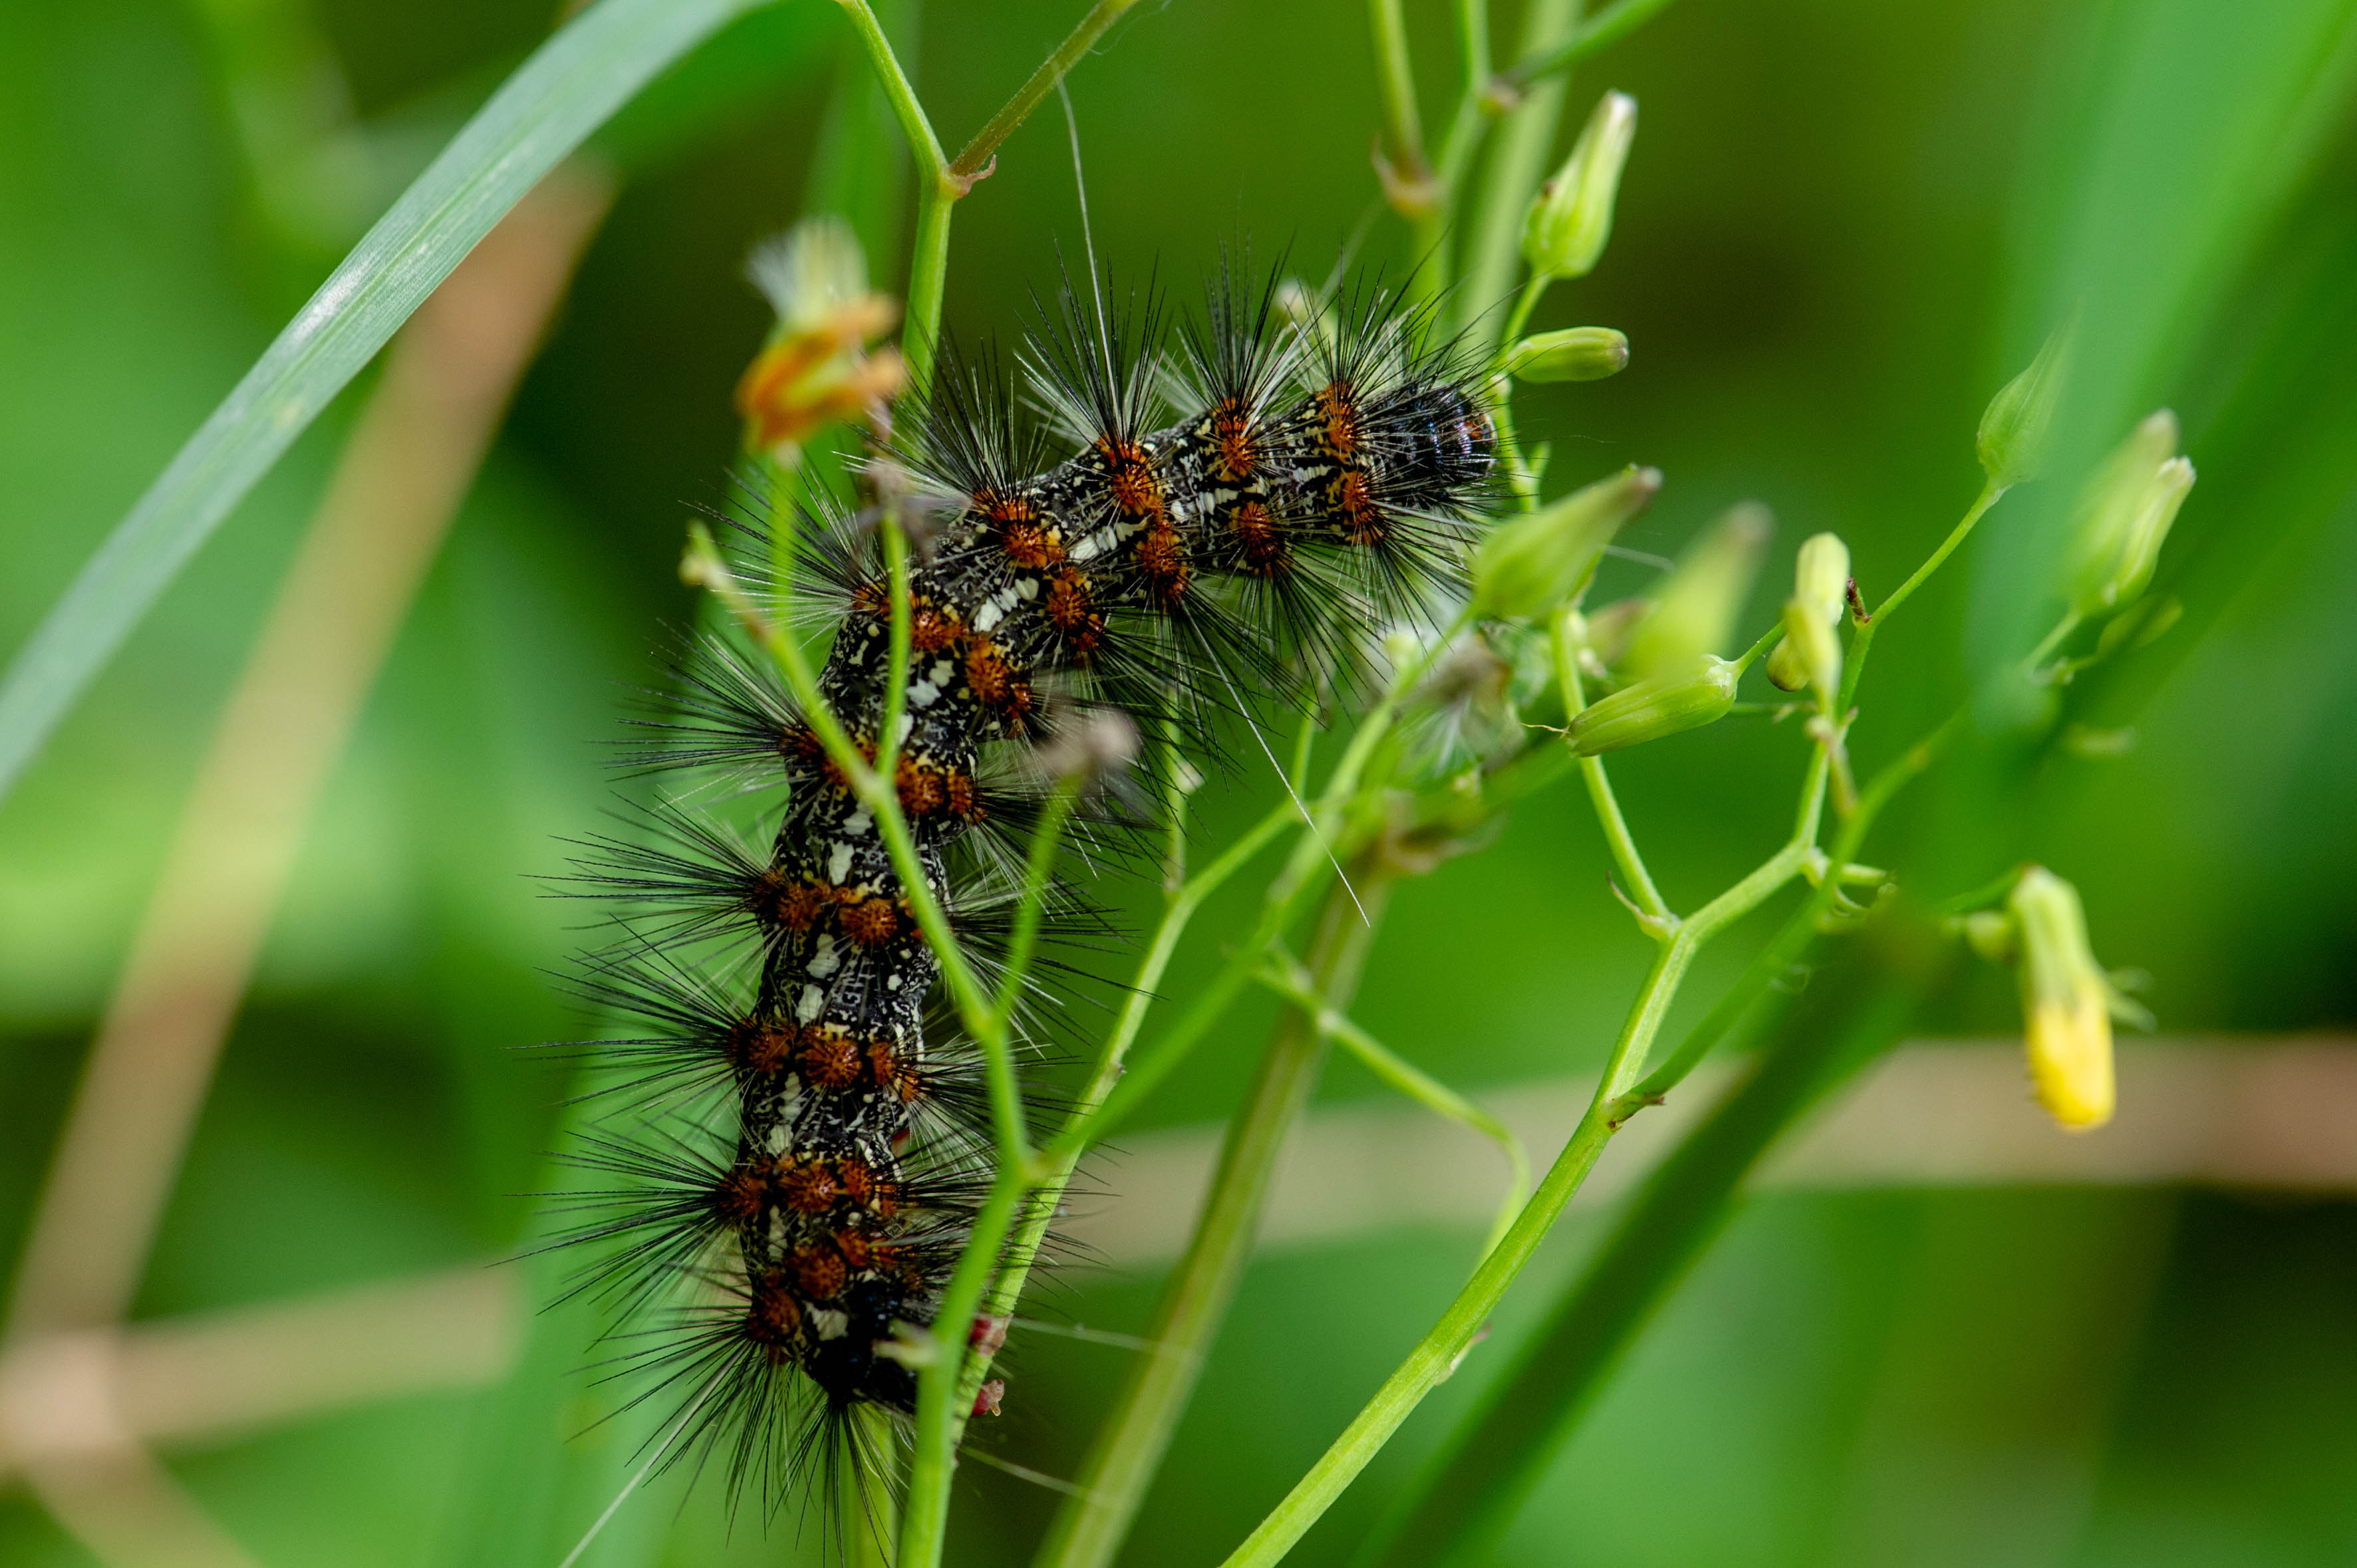 クワゴマダラヒトリの幼虫 虫の写真と生態なら昆虫写真図鑑 ムシミル